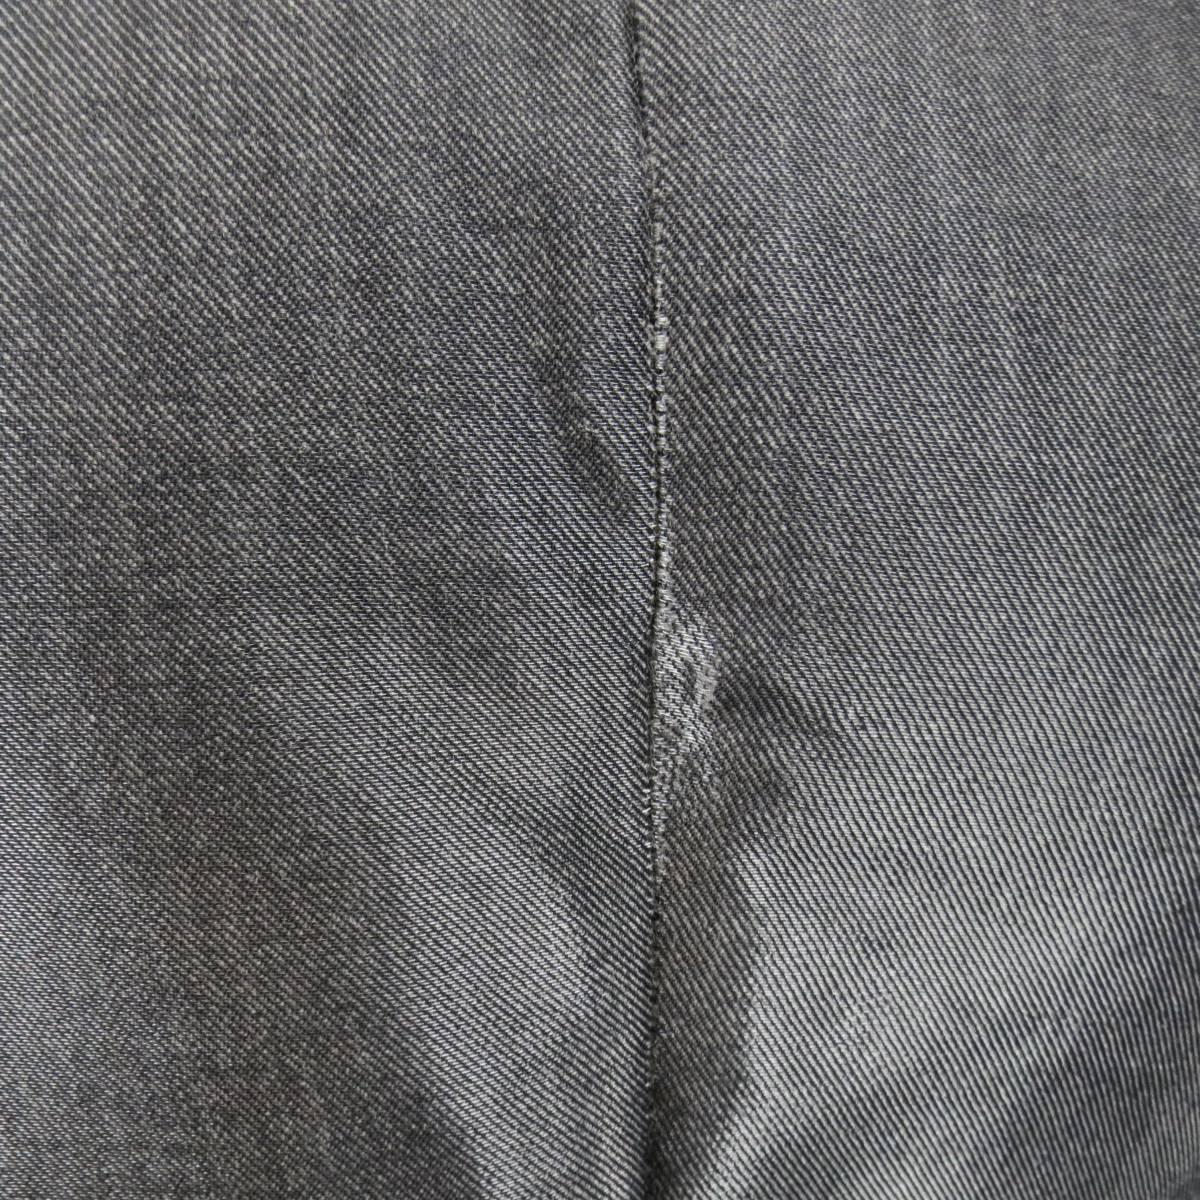 Women's RALPH LAUREN COLLECTION Pencil Skirt Size 4 Metallic Grey Wool Blend